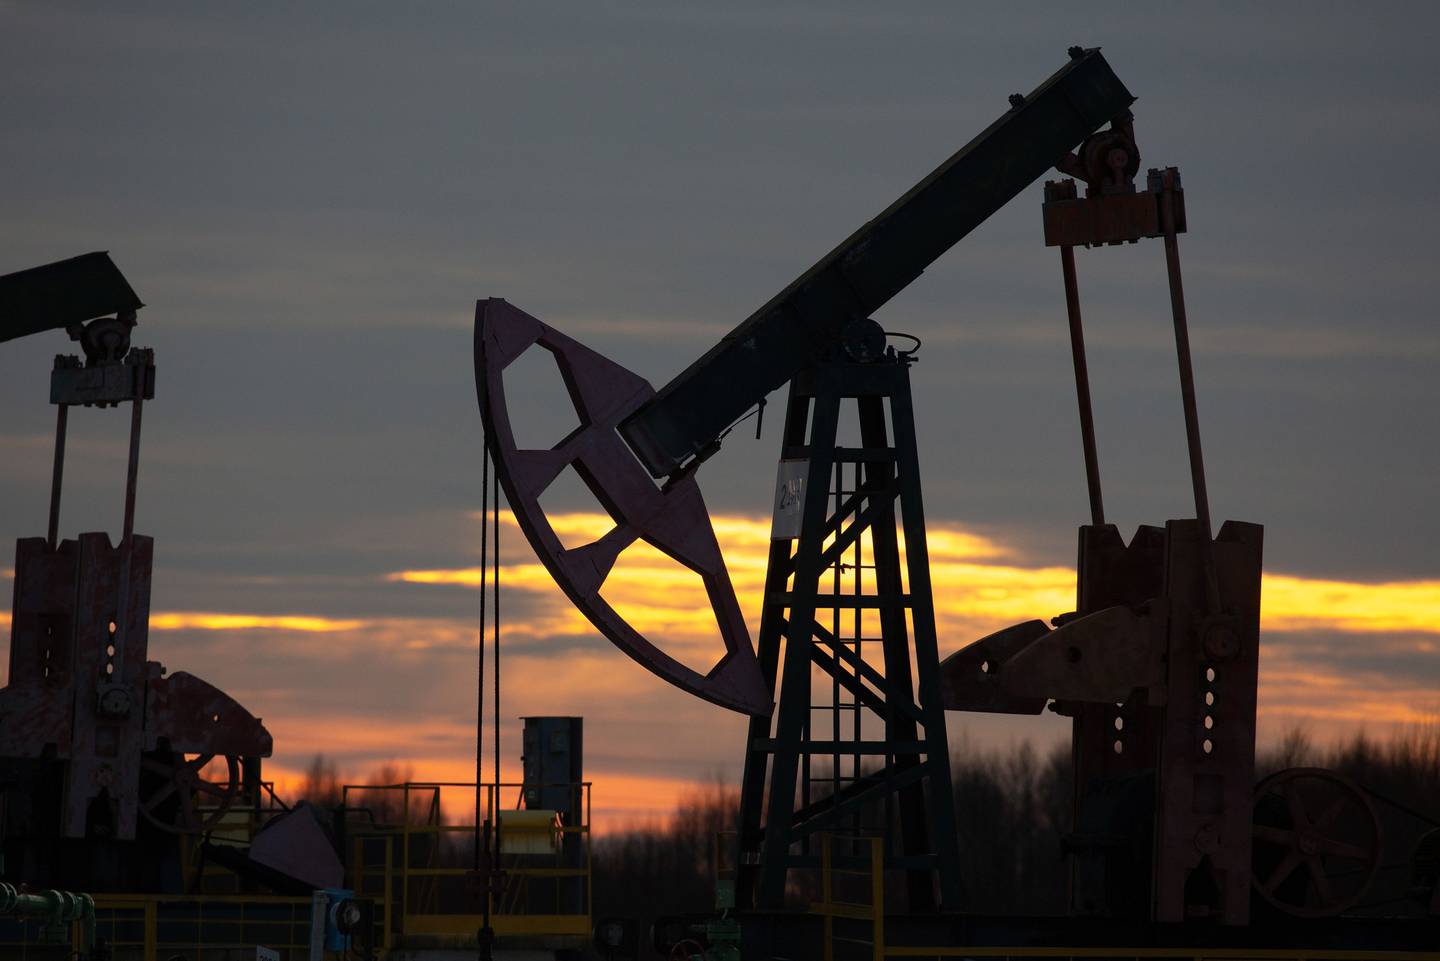 Cotações do petróleo em torno de US$ 60 a US$ 70 por barril podem ser aceitáveis para o Azerbaijão e também para a economia global, segundo o ministro